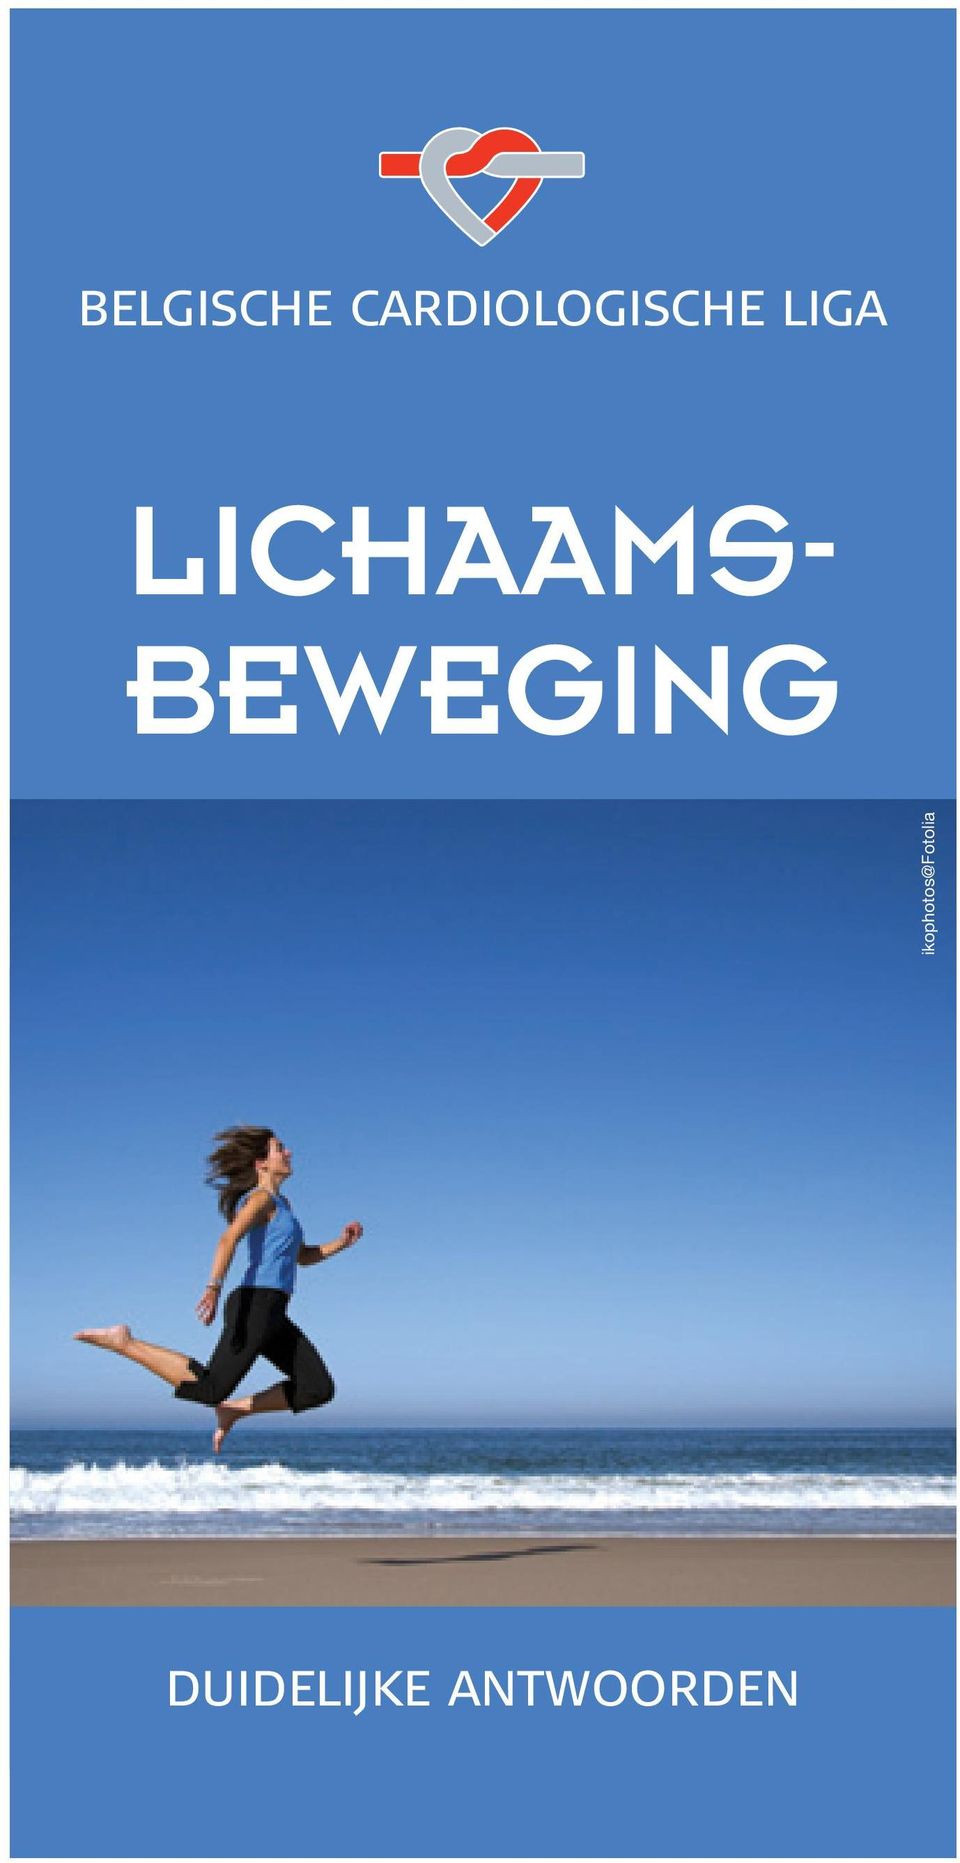 LICHAAMS- BEWEGING